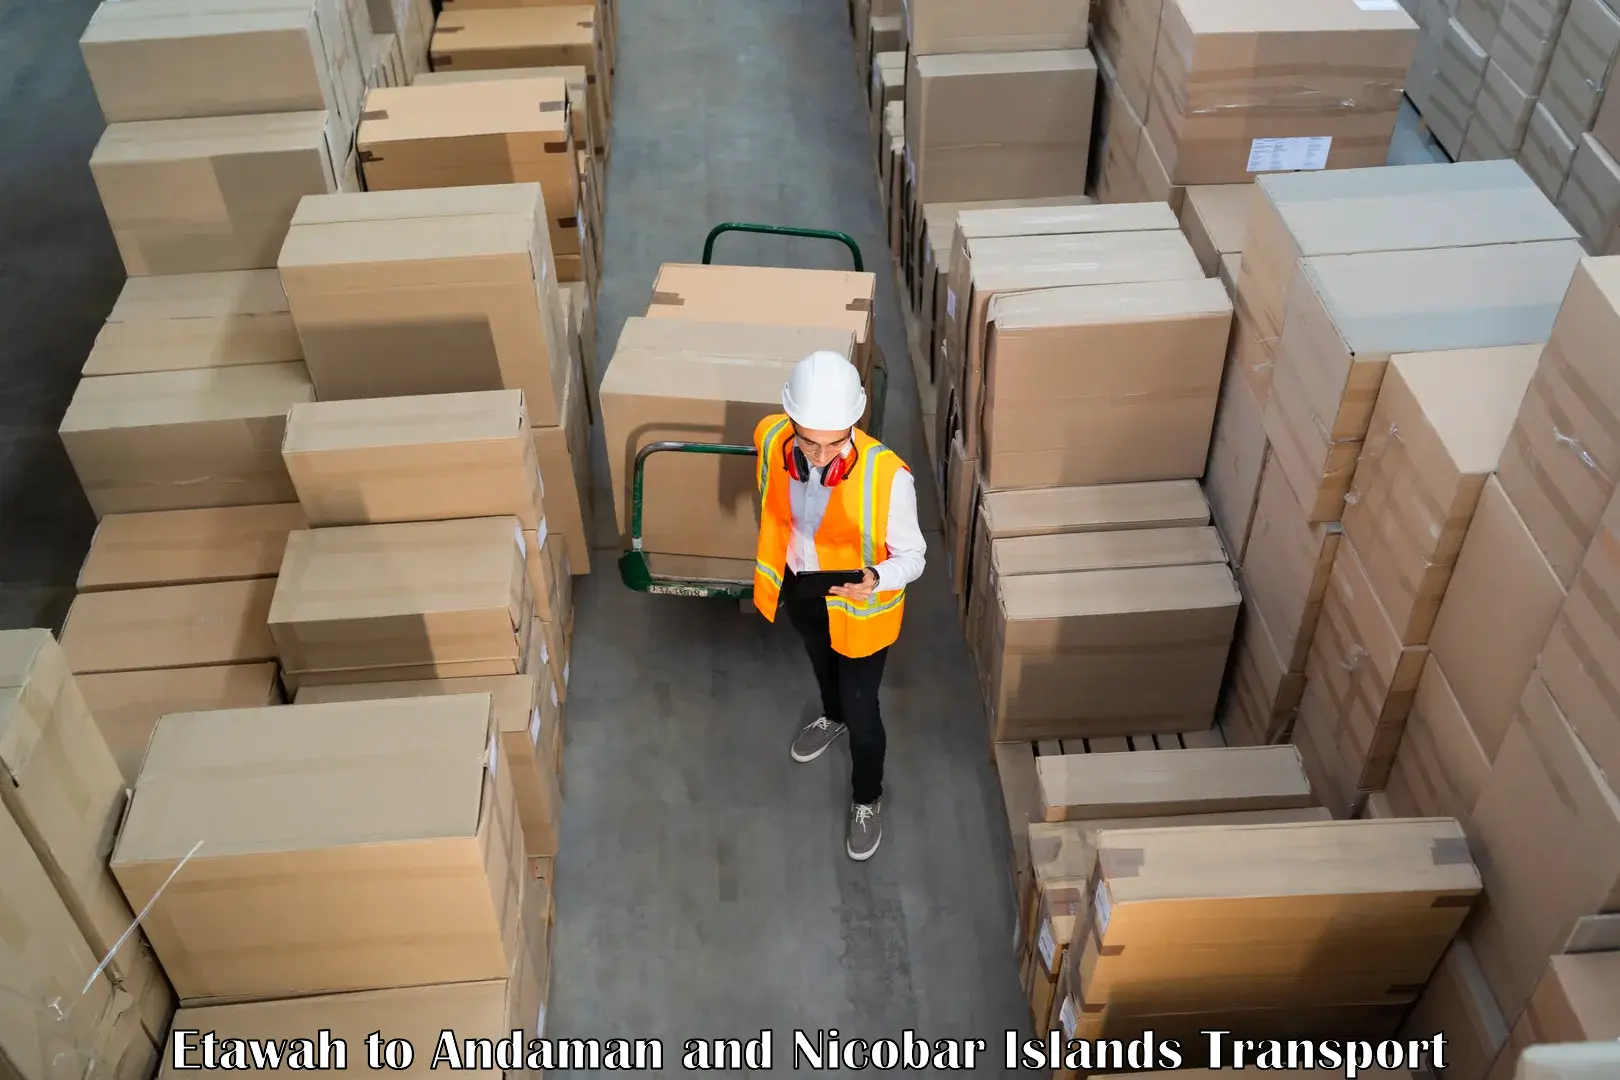 India truck logistics services Etawah to Andaman and Nicobar Islands